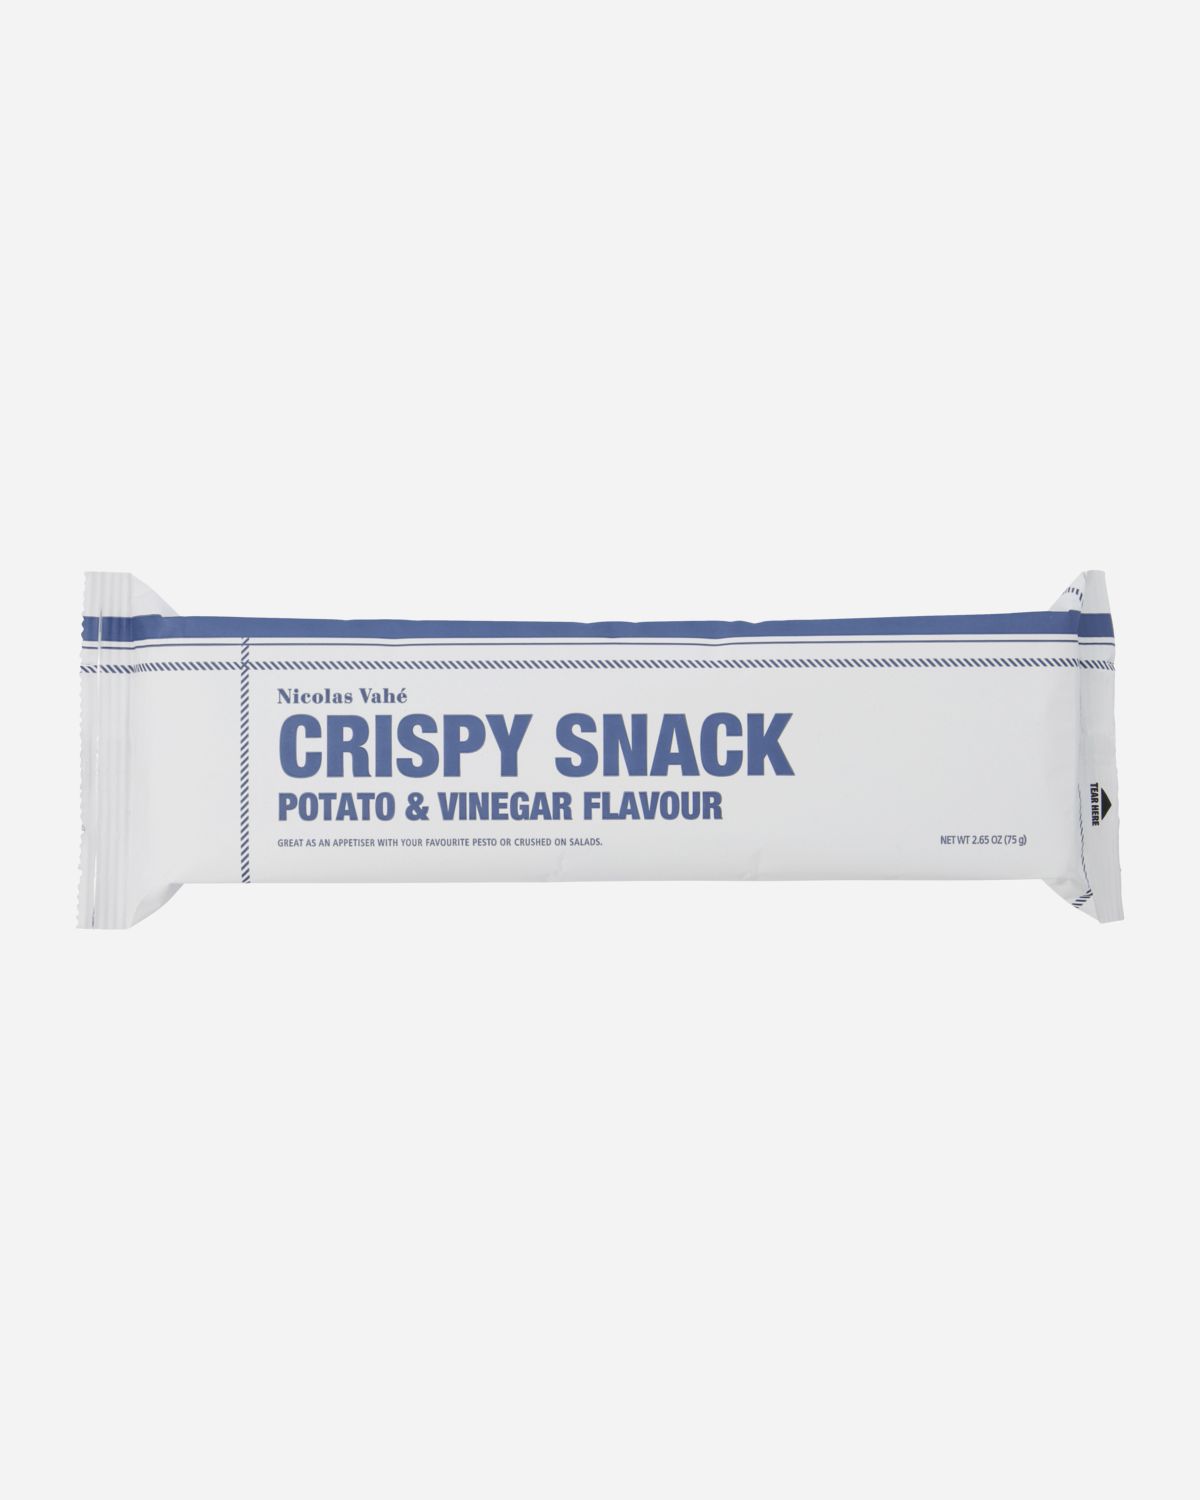 Crispy snack, Vinegar & Salt, 75 g.